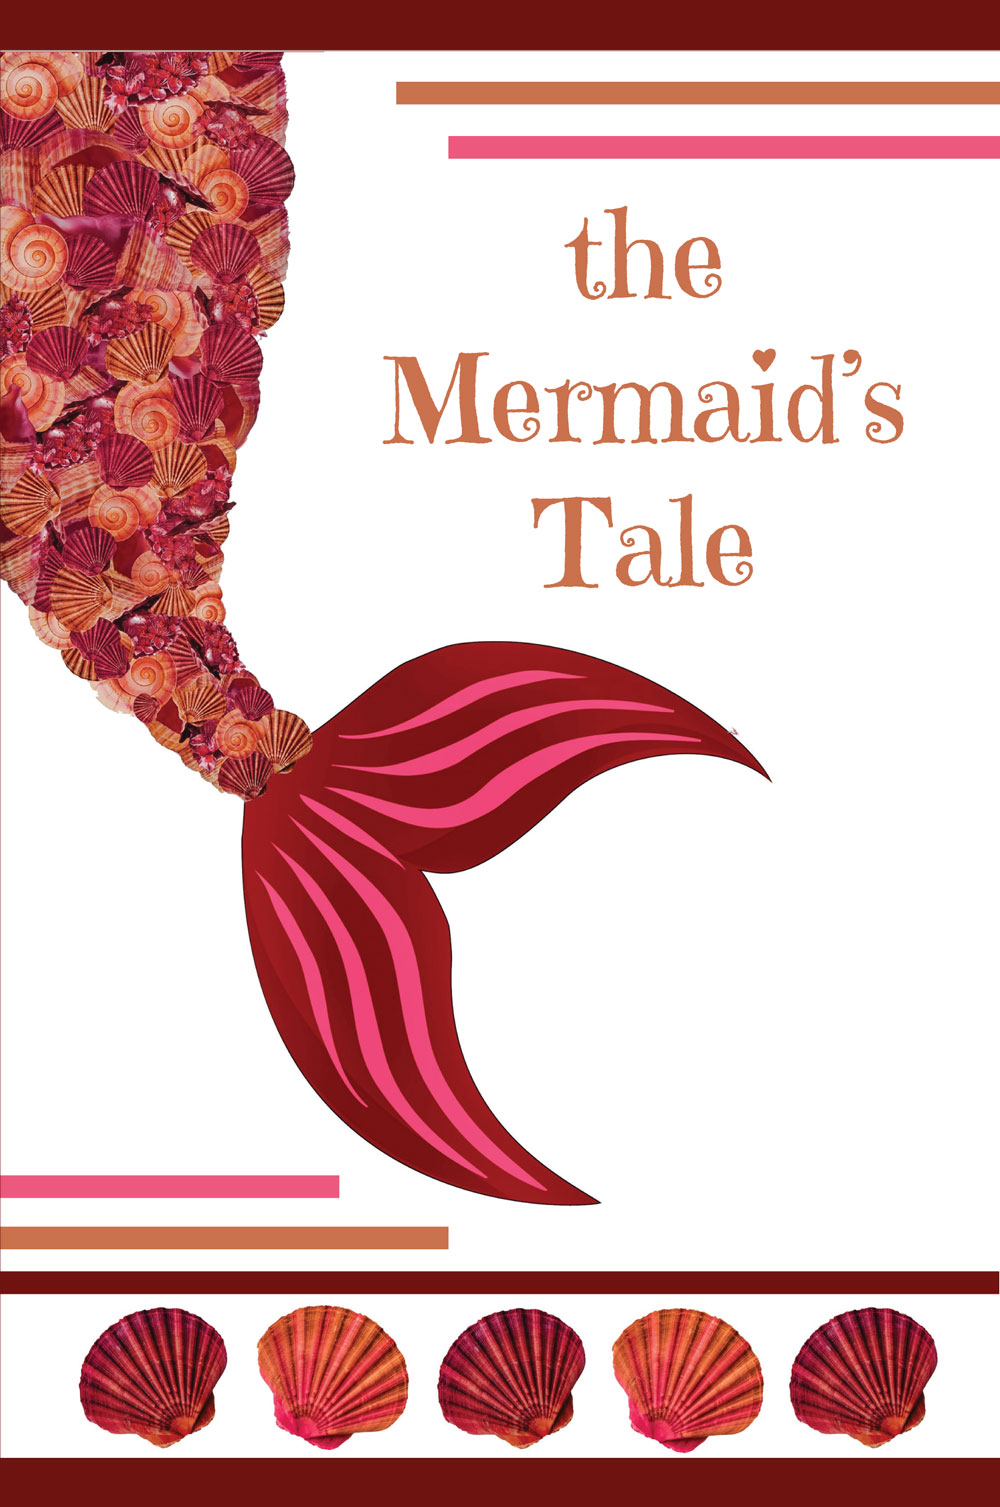 The Mermaid’s Tale